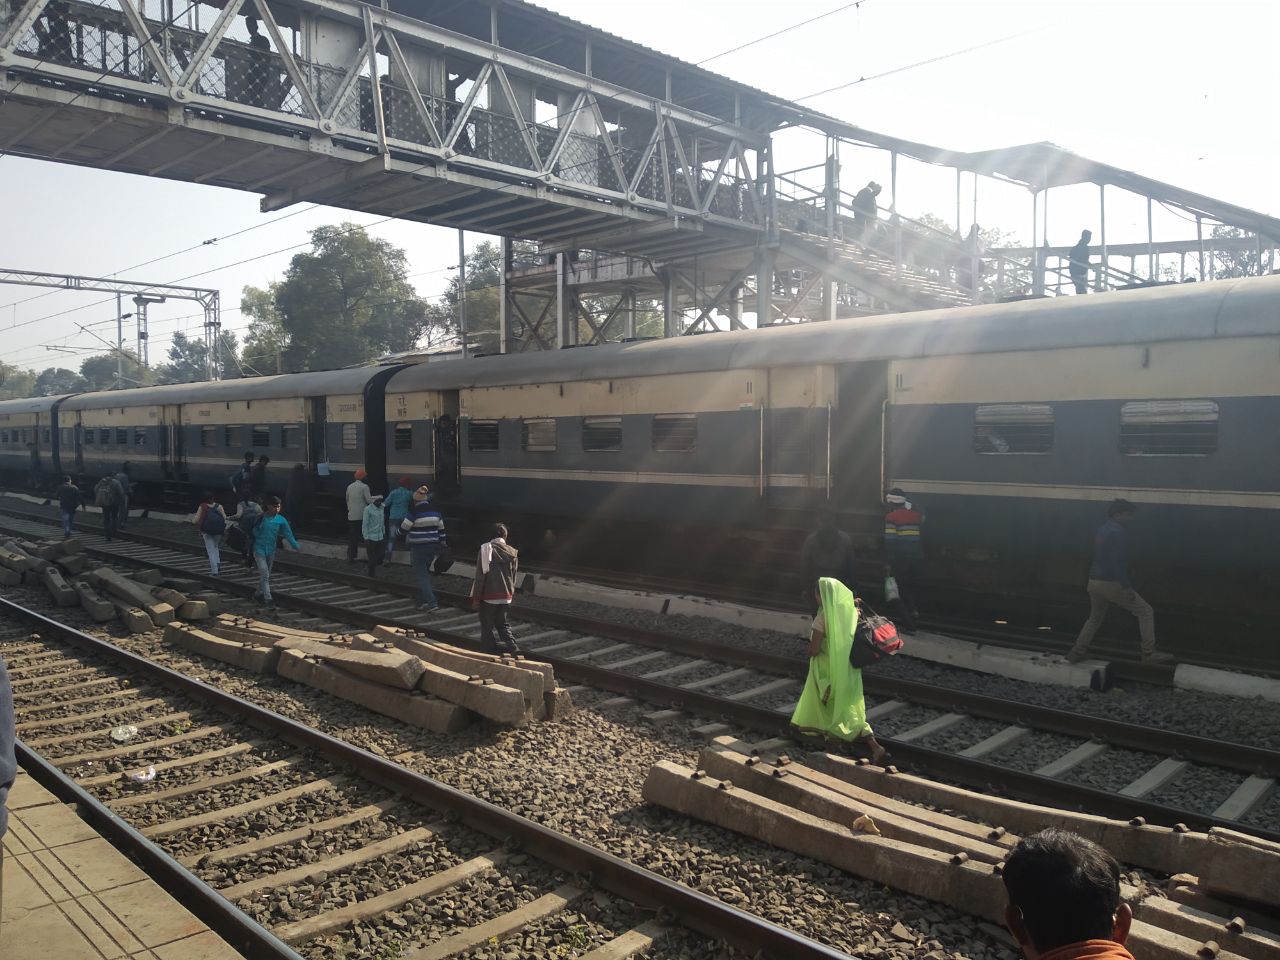 प्लेट फार्म क्रमांक-दो पर आई ट्रेनें, यात्रियों ने डाली जोखिम में जान